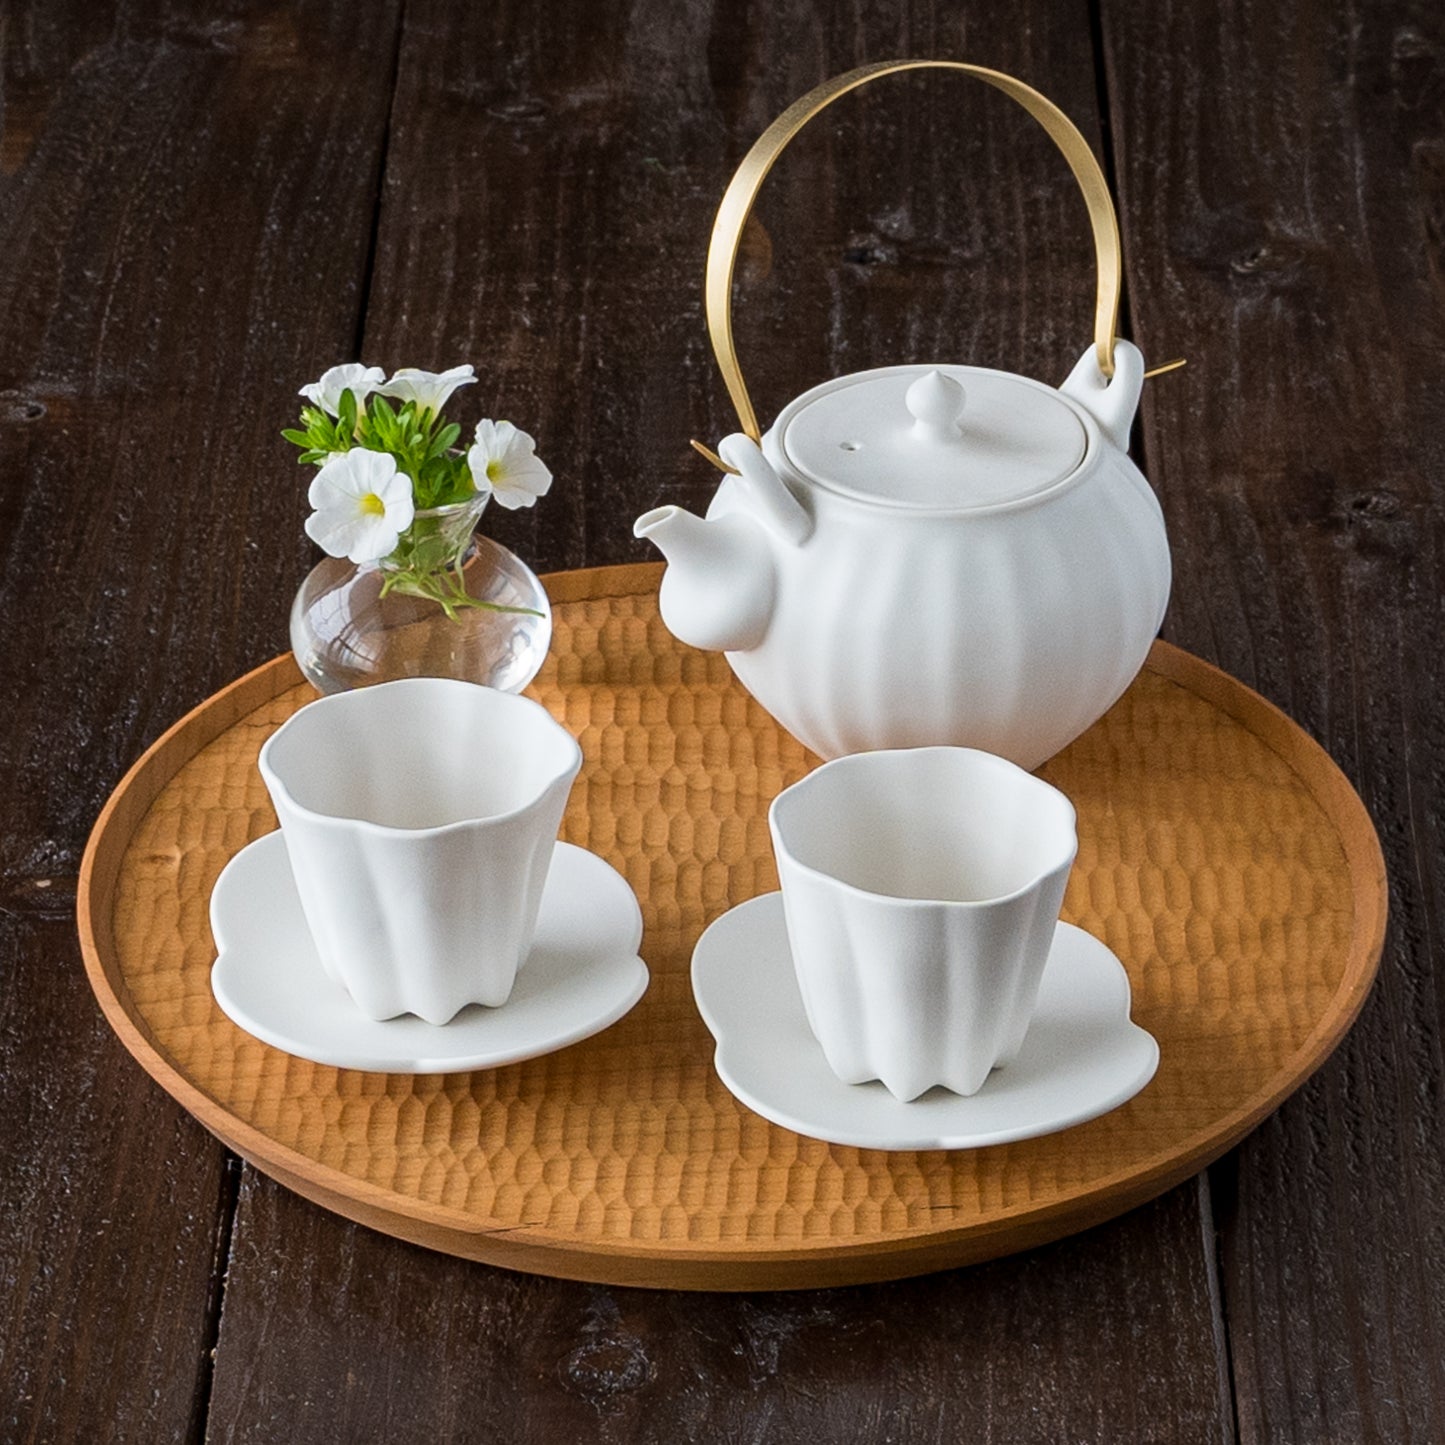 お茶の時間が楽しみになる藤村佳澄さんの白磁の急須とカヌレ茶器